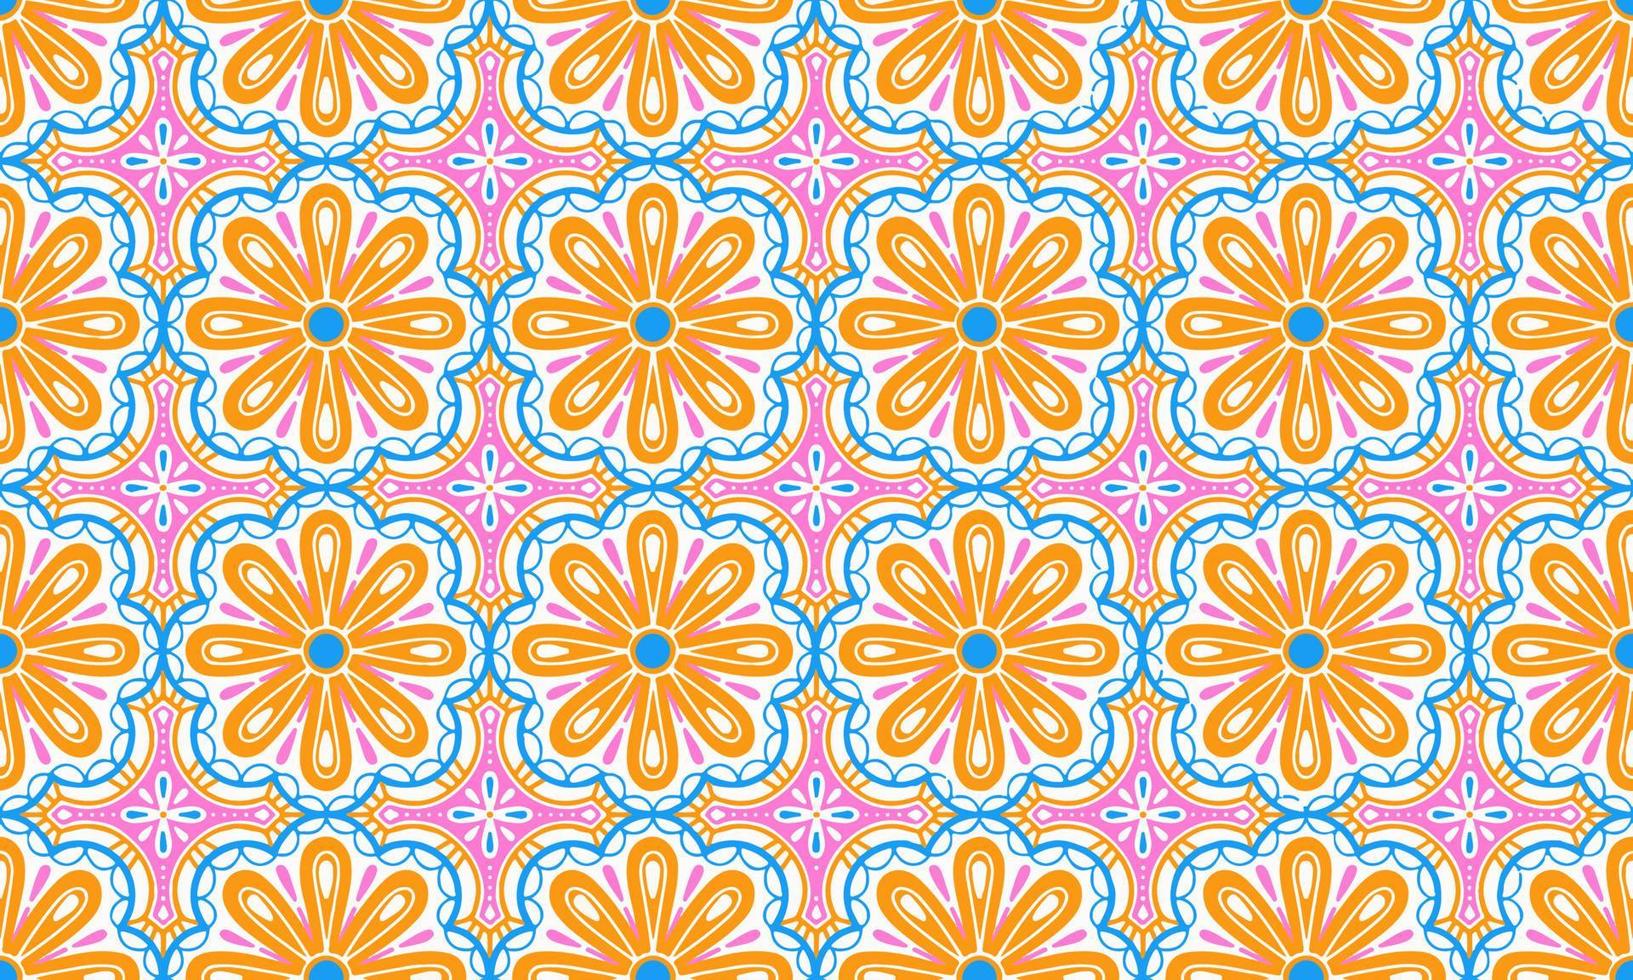 étnico resumen antecedentes linda rosado naranja azul flor geométrico tribal gente motivo oriental nativo modelo tradicional diseño alfombra fondo de pantalla ropa tela envase impresión batik gente tejer vector